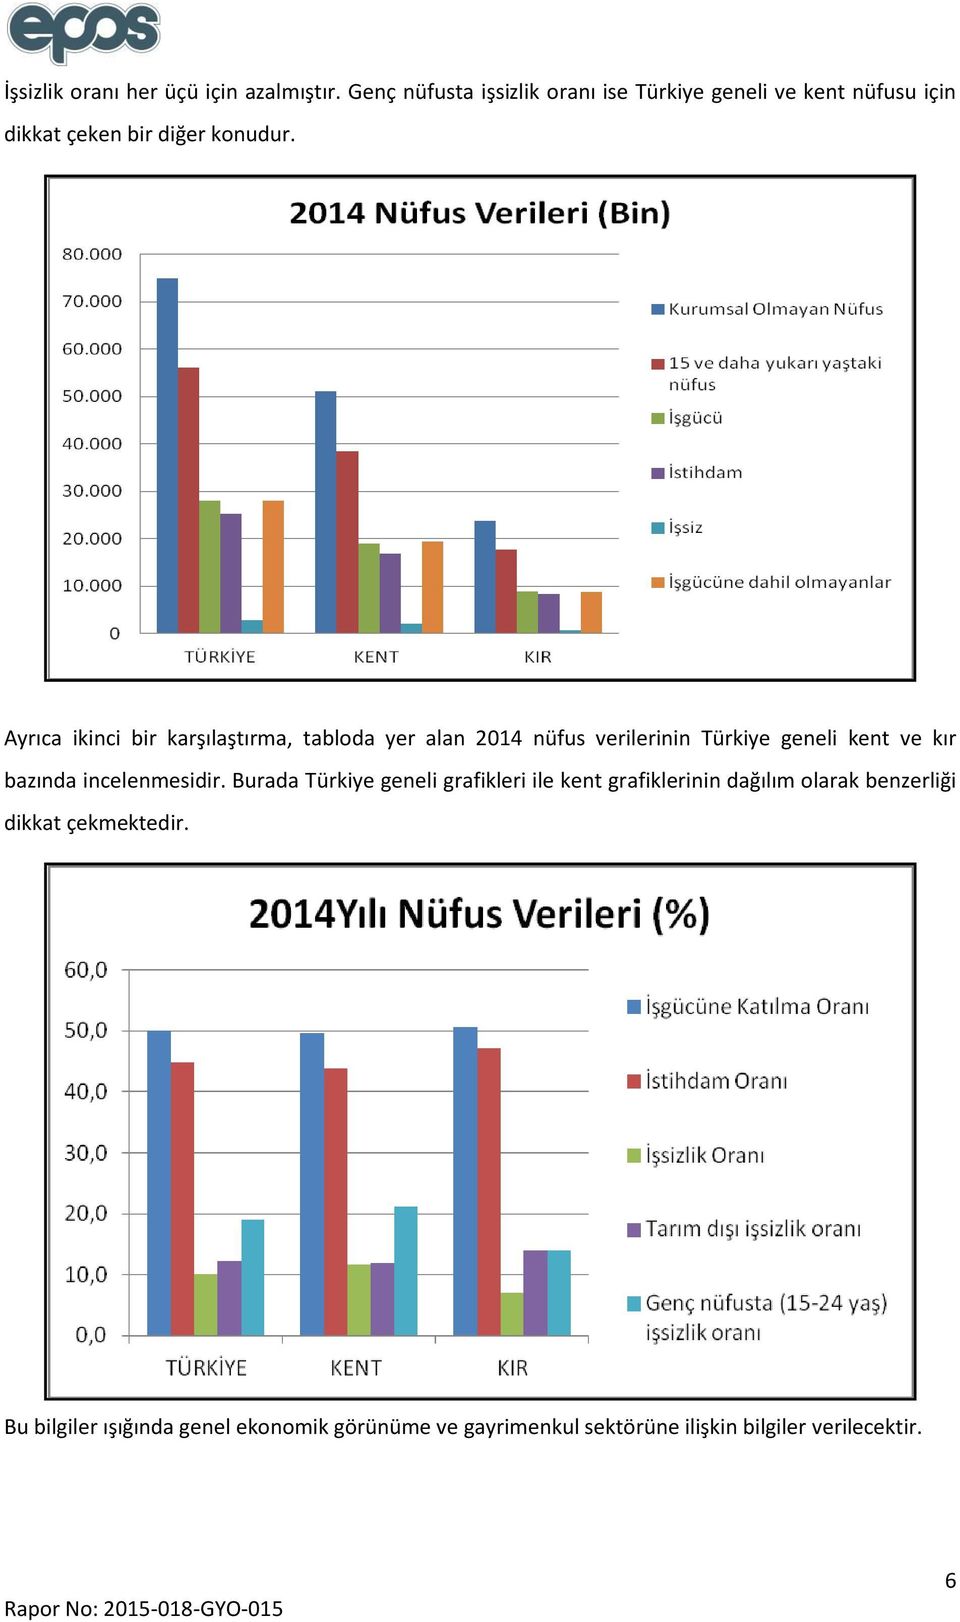 Ayrıca ikinci bir karşılaştırma, tabloda yer alan 2014 nüfus verilerinin Türkiye geneli kent ve kır bazında